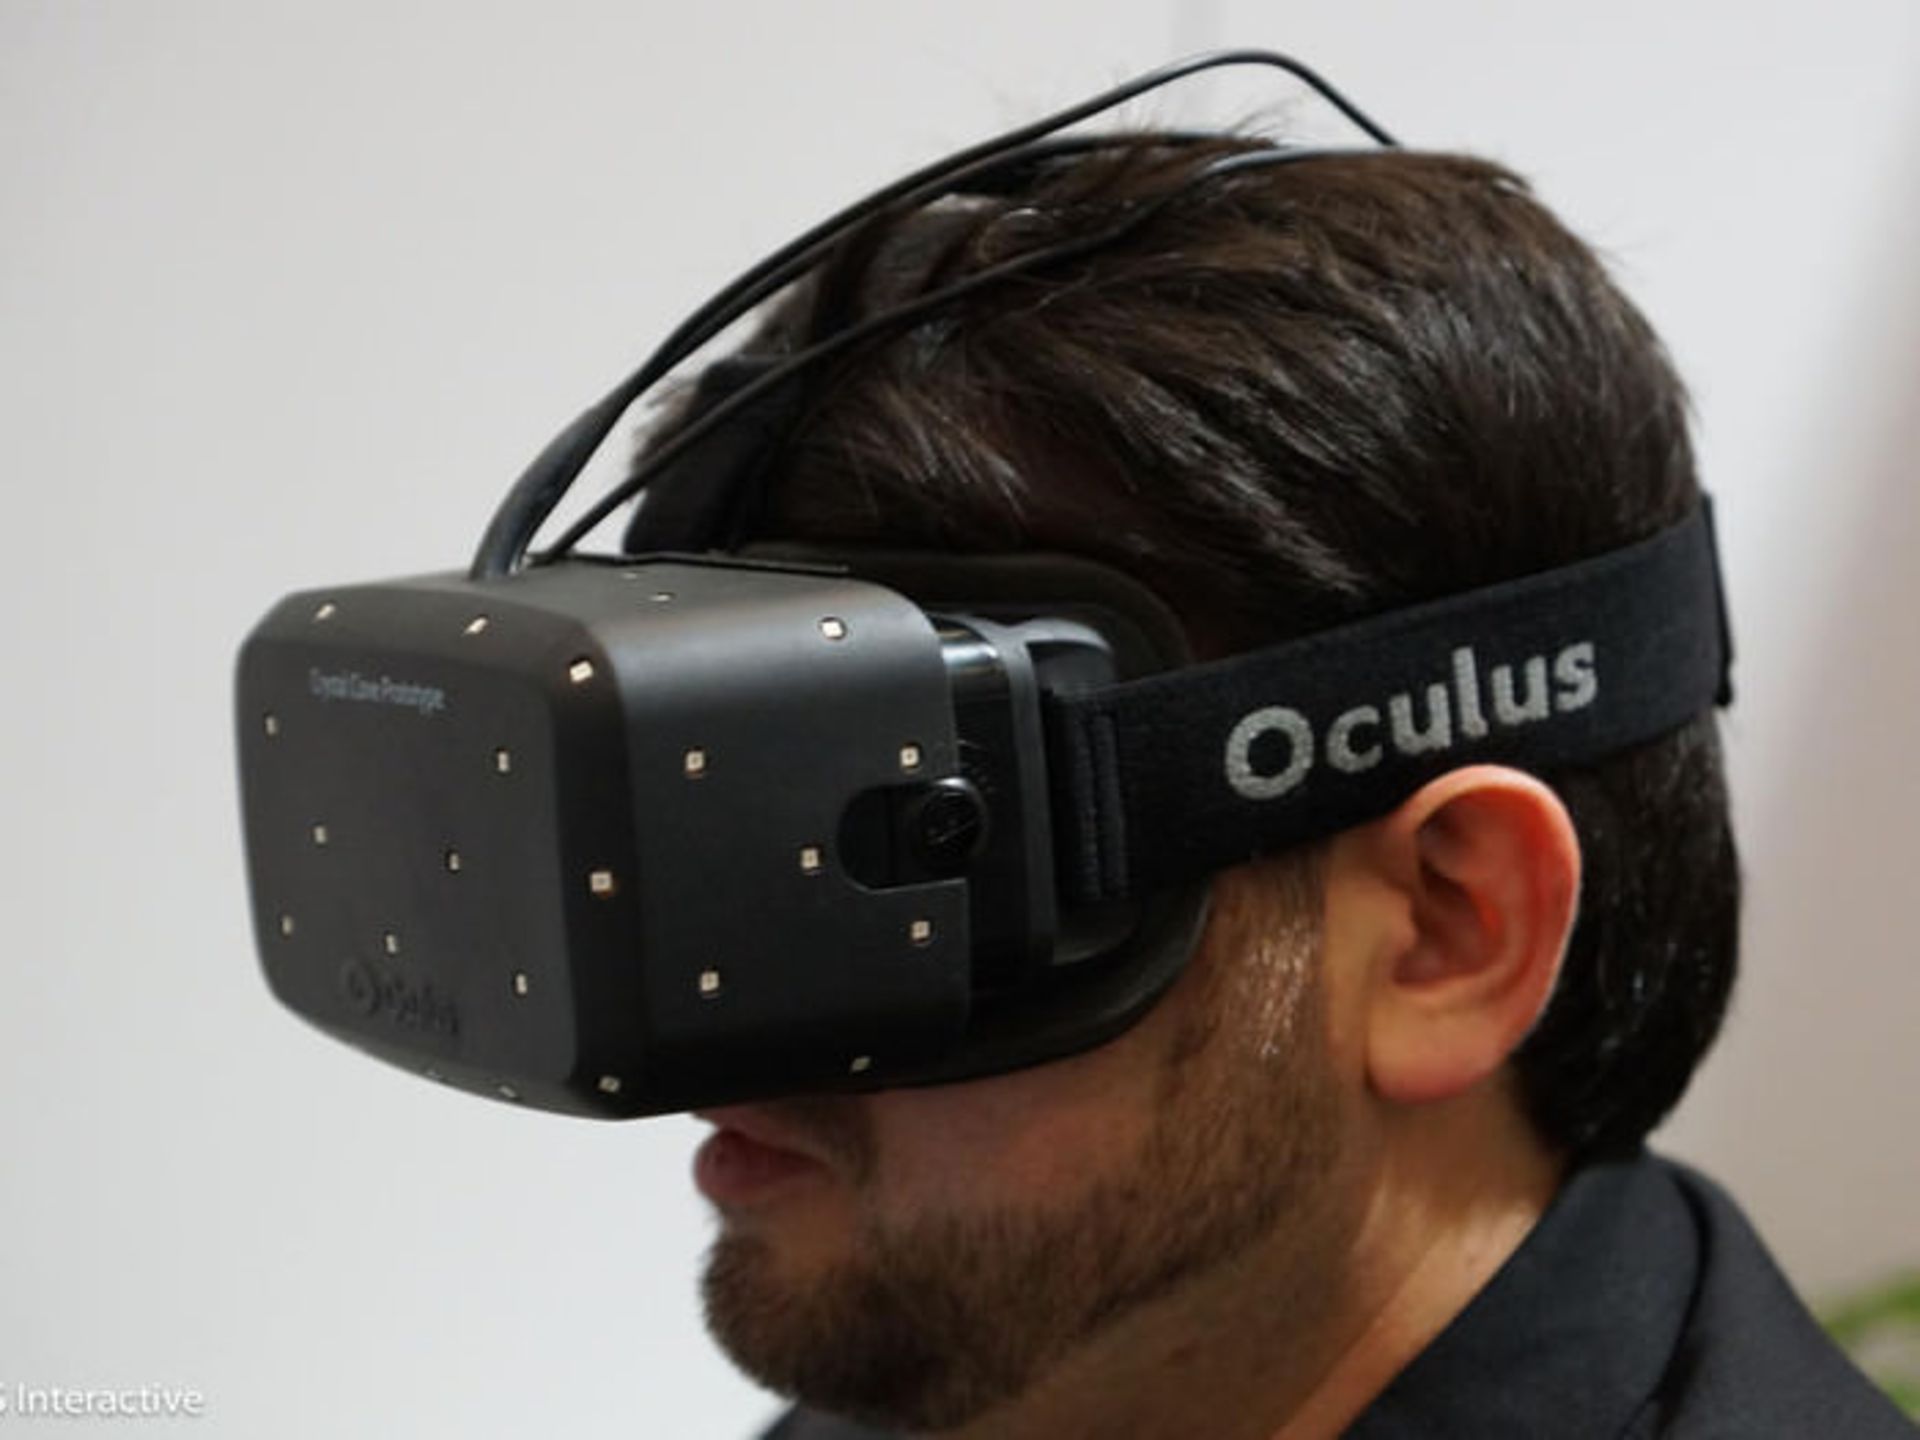 008Oculus Rift VR CES2014 